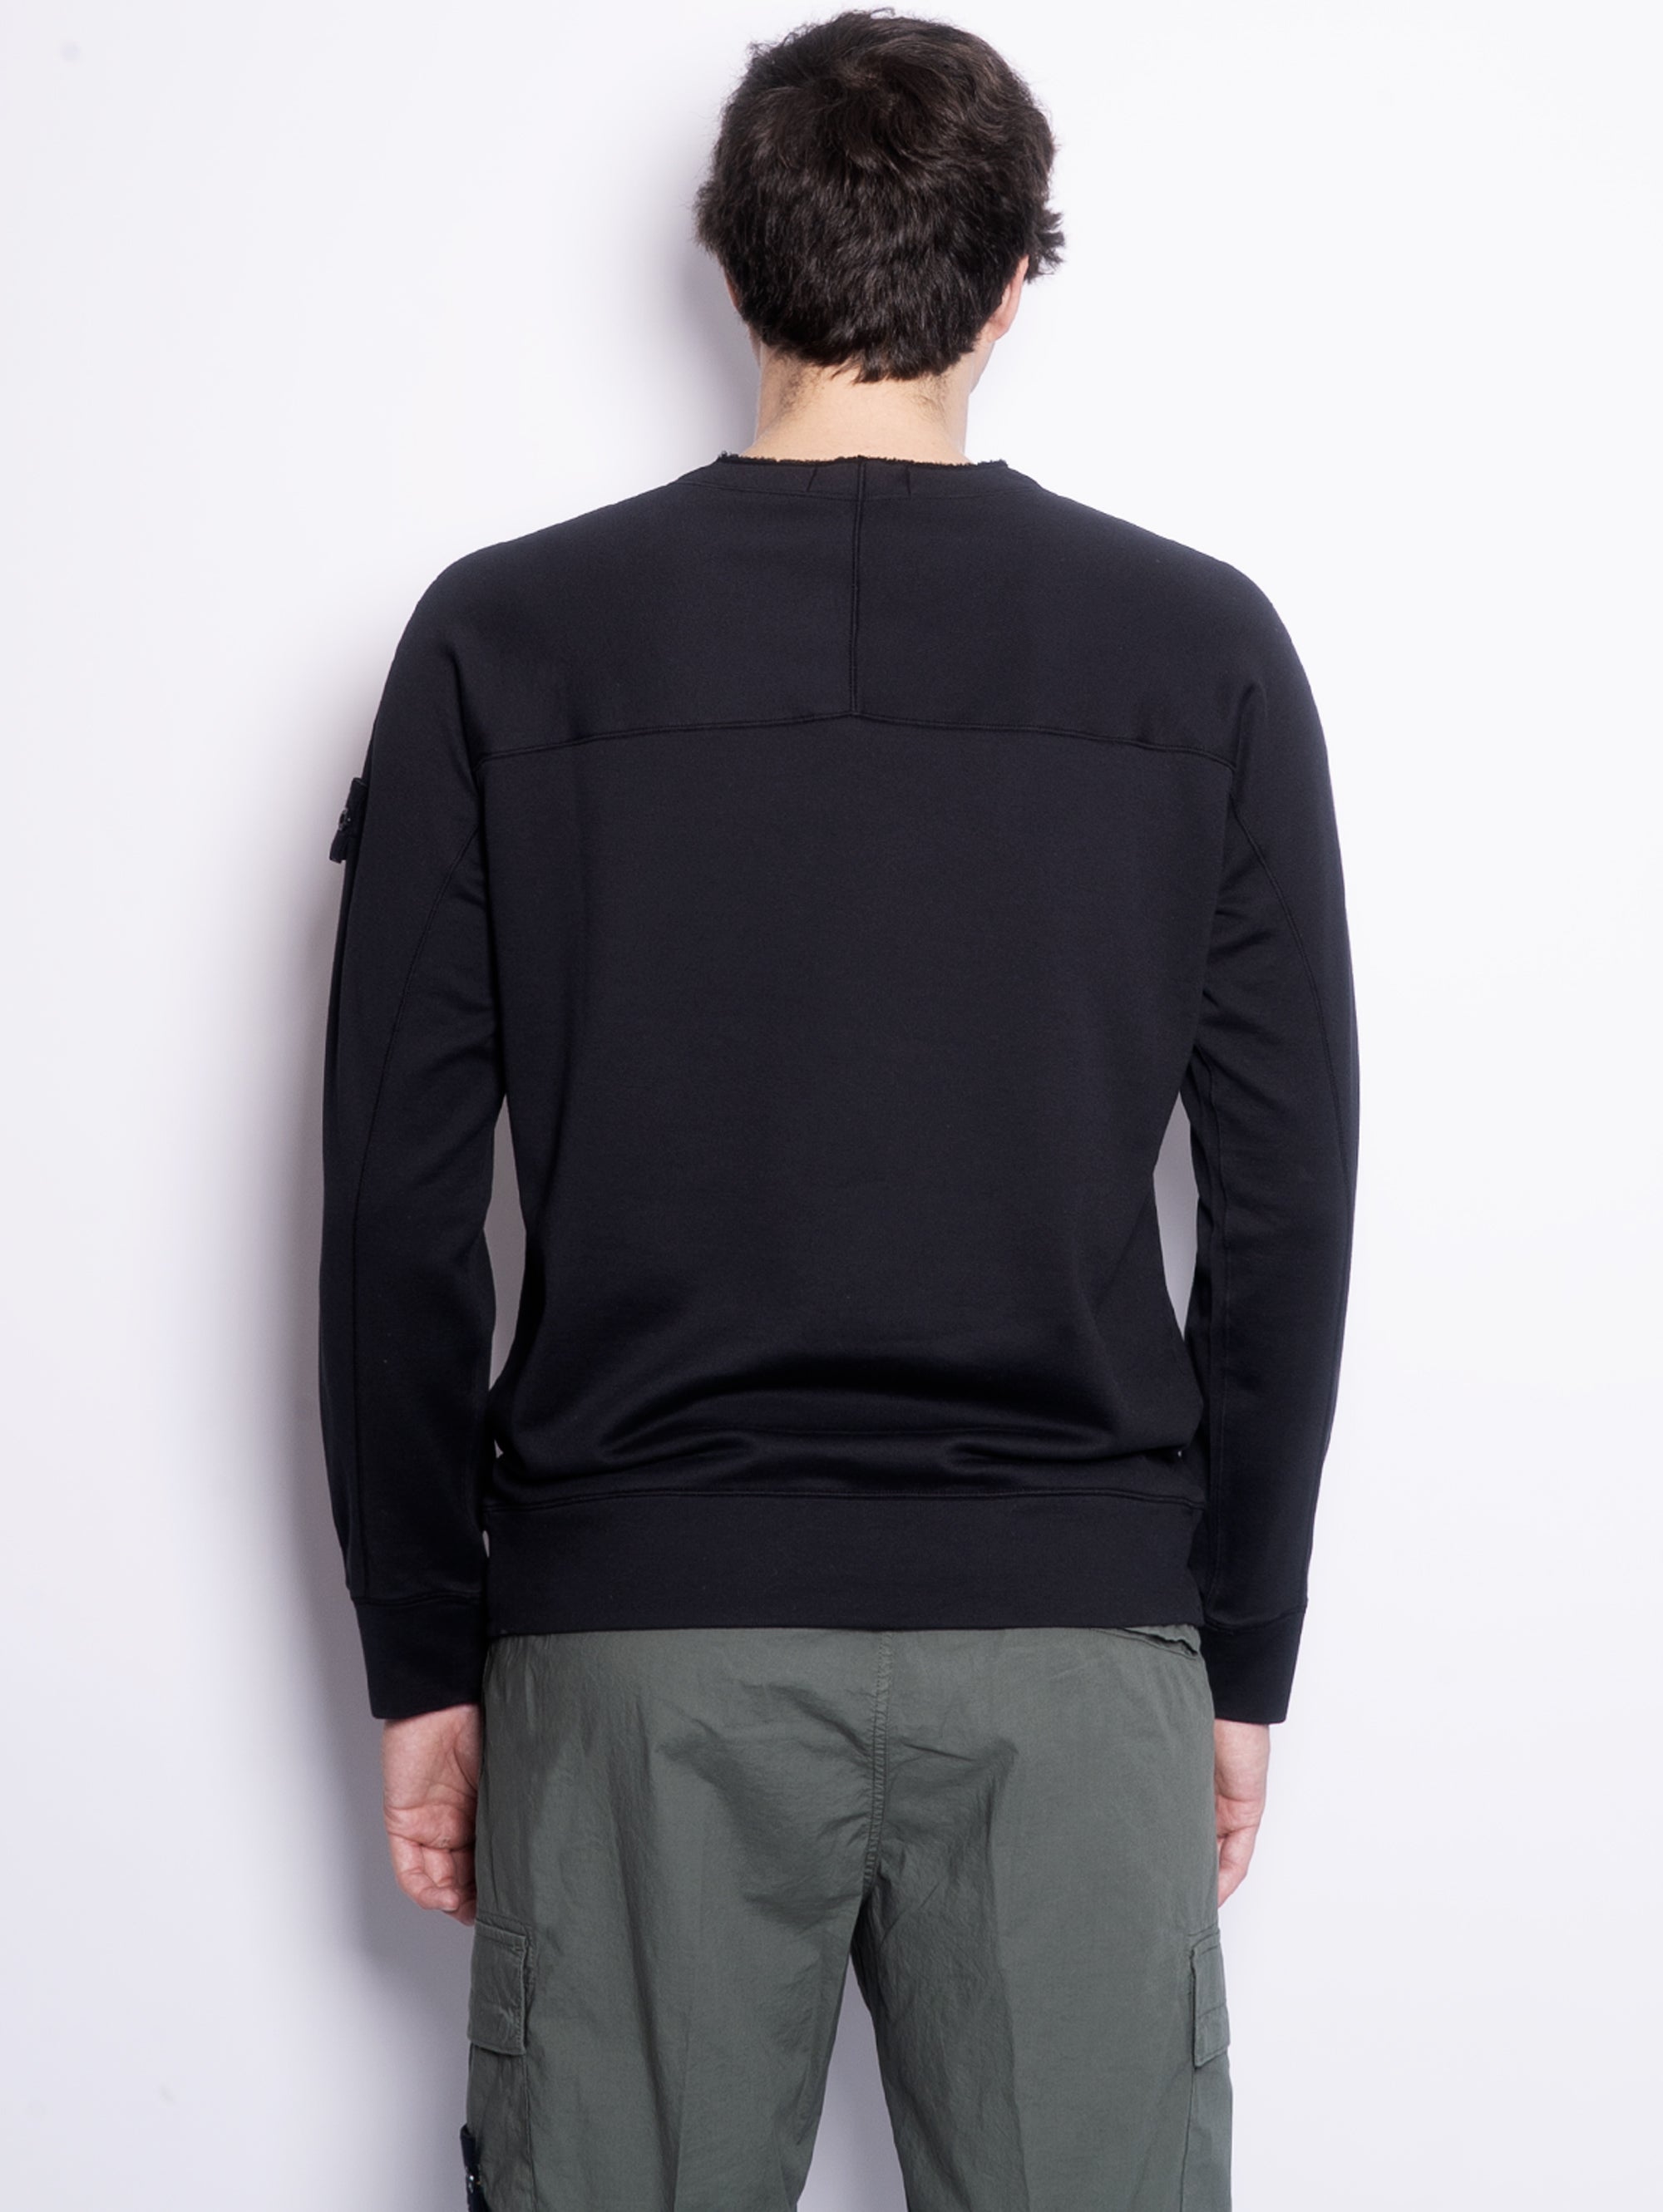 Ghost-Sweatshirt mit Rundhalsausschnitt, stückgefärbt in Schwarz